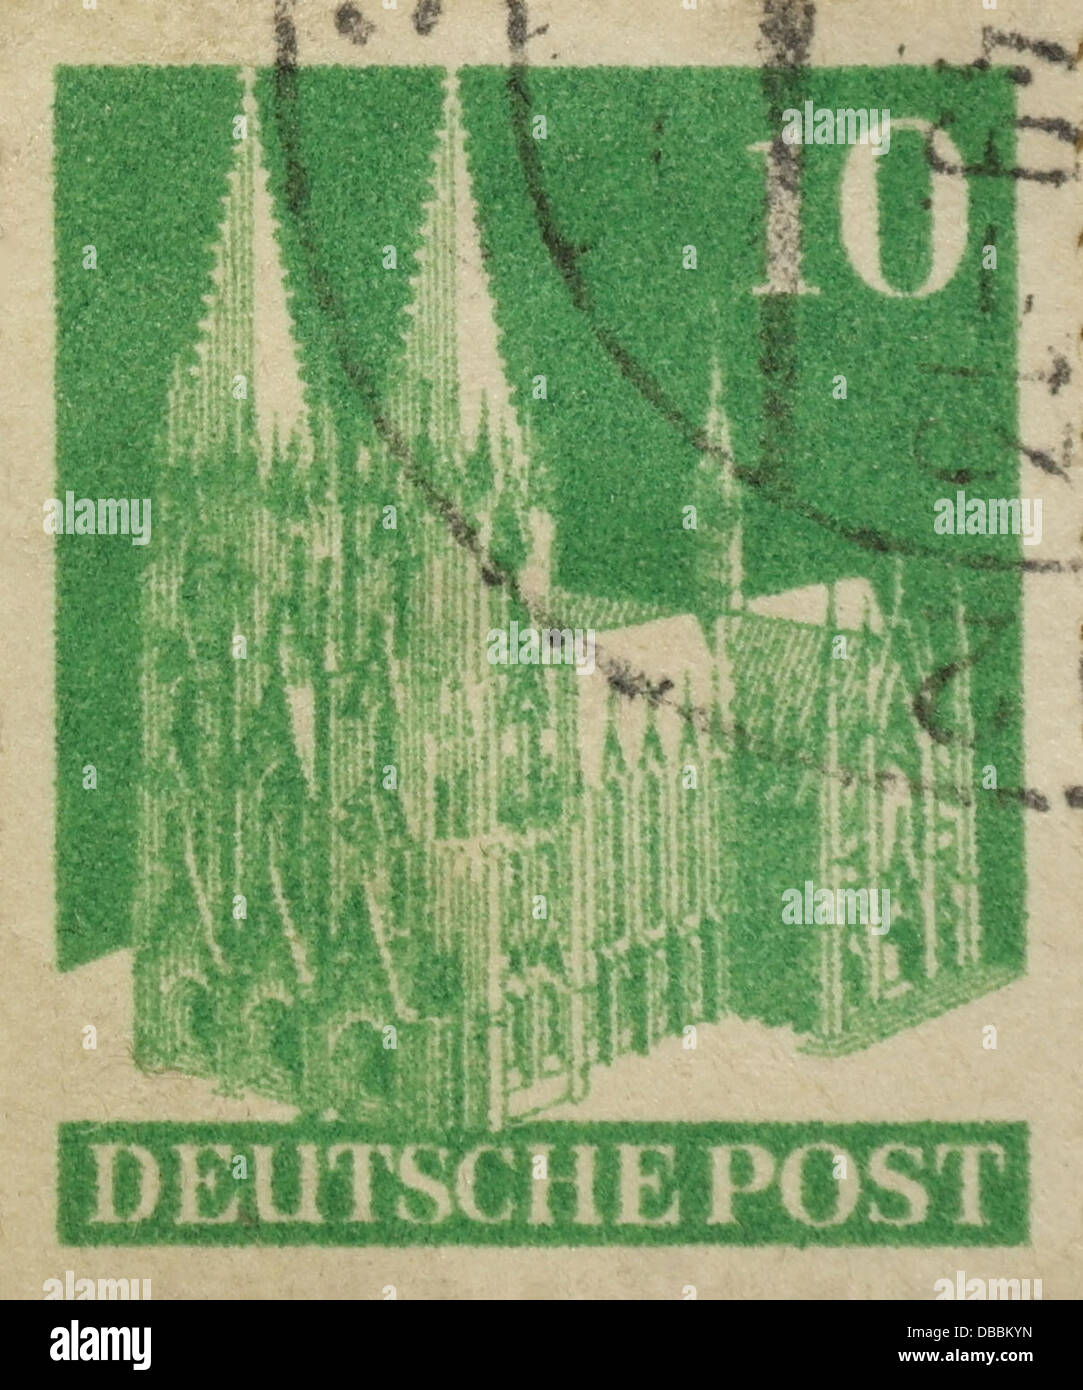 Grün 10 Pfennig Deutsche Post Briefmarke Kölner Dom Ausgestellt